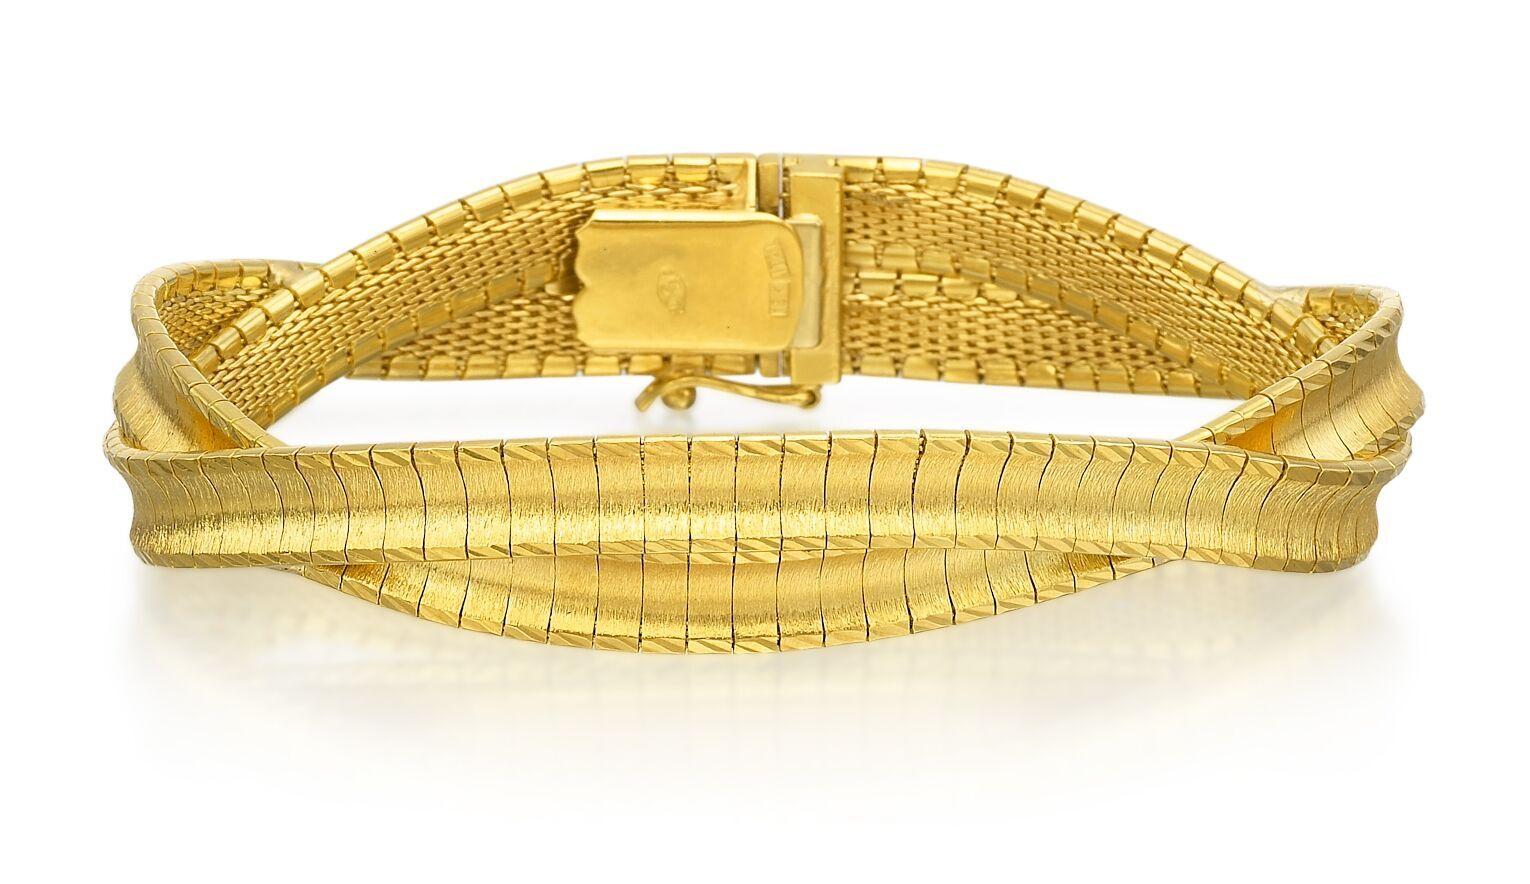 Dieses flexible, geflochtene Armband aus 18 Karat Gelbgold mit seinem schlichten, glänzenden Stil schmiegt sich bequem um das Handgelenk und ist ein klassischer Look, den Sie jeden Tag tragen werden. Dieses Armband verkörpert die Essenz des